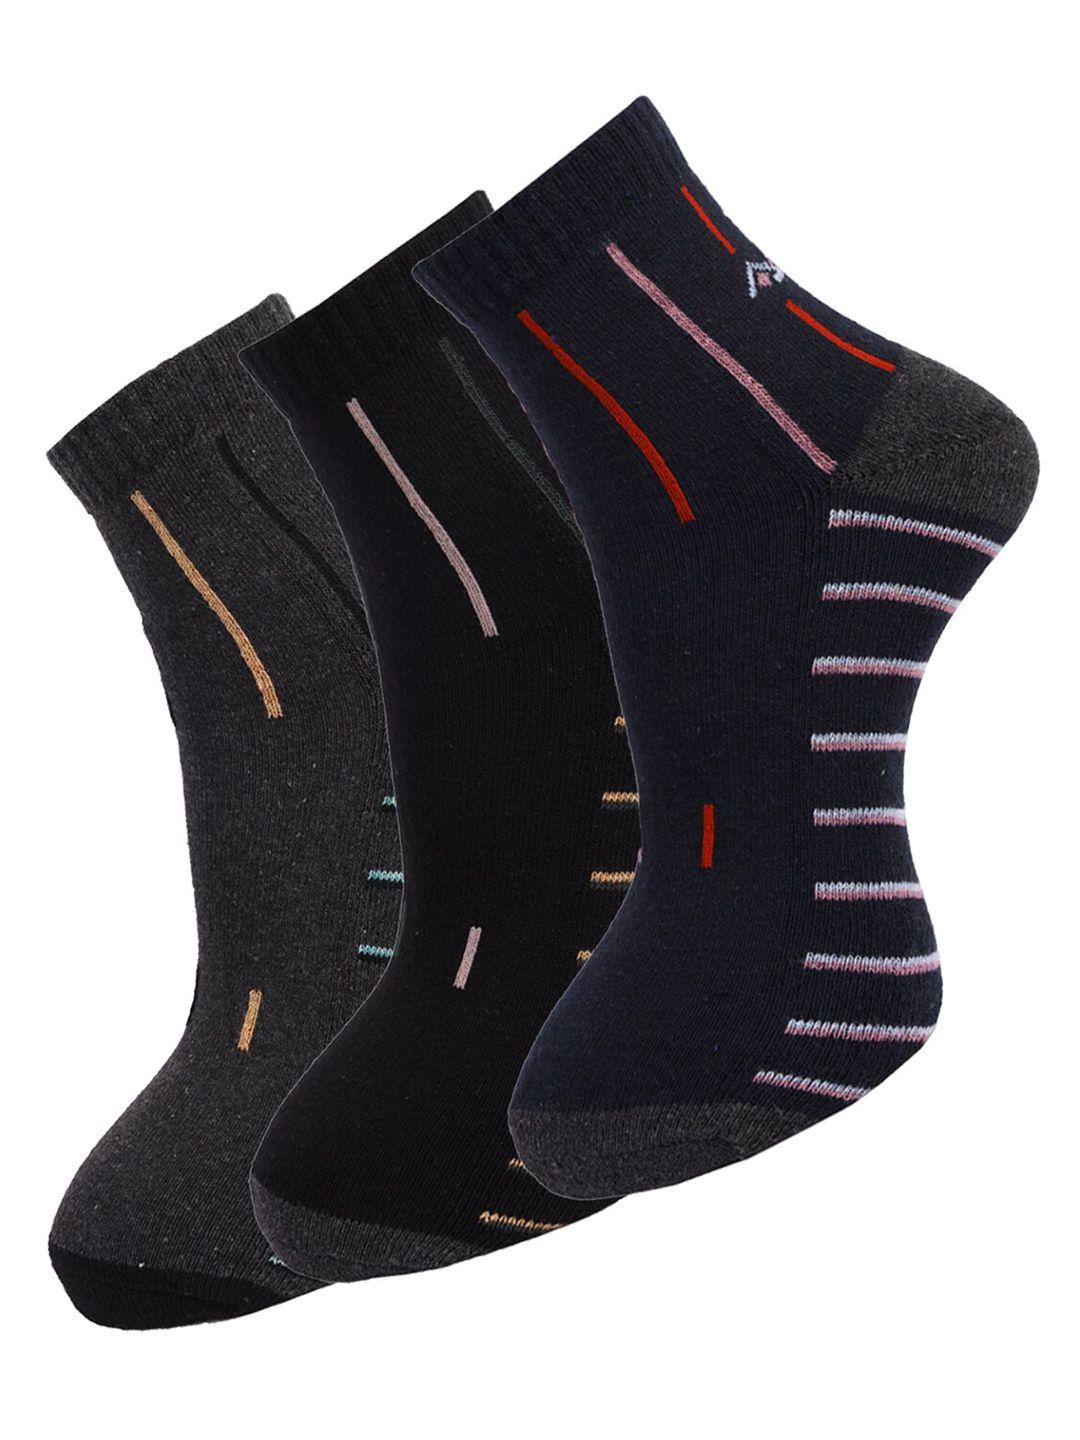 dollar-socks-men-pack-of-3-assorted-ankle-length-socks